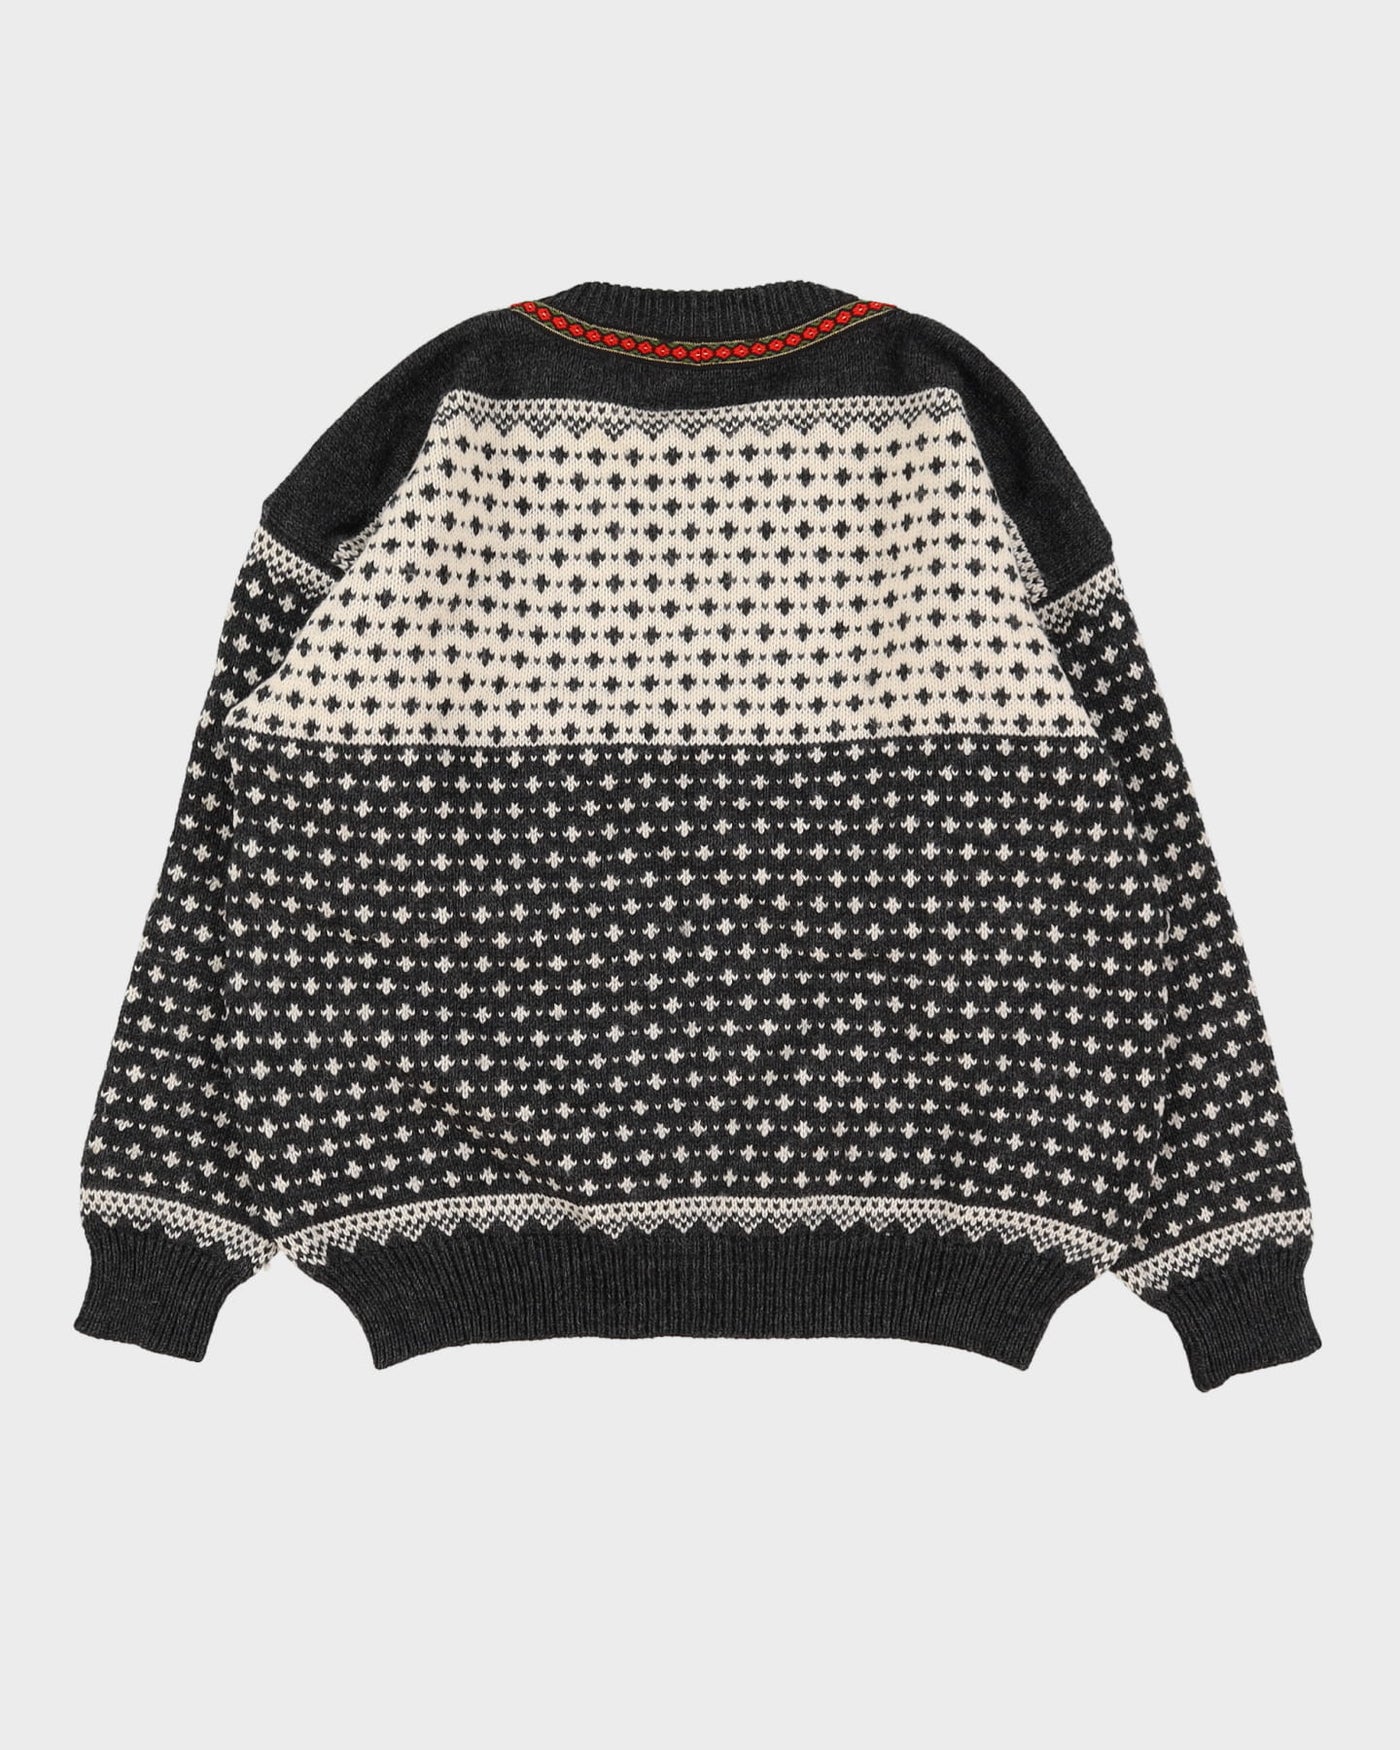 Vintage 60s Nordstrikk Grey Patterned Knitted Sweater - XL